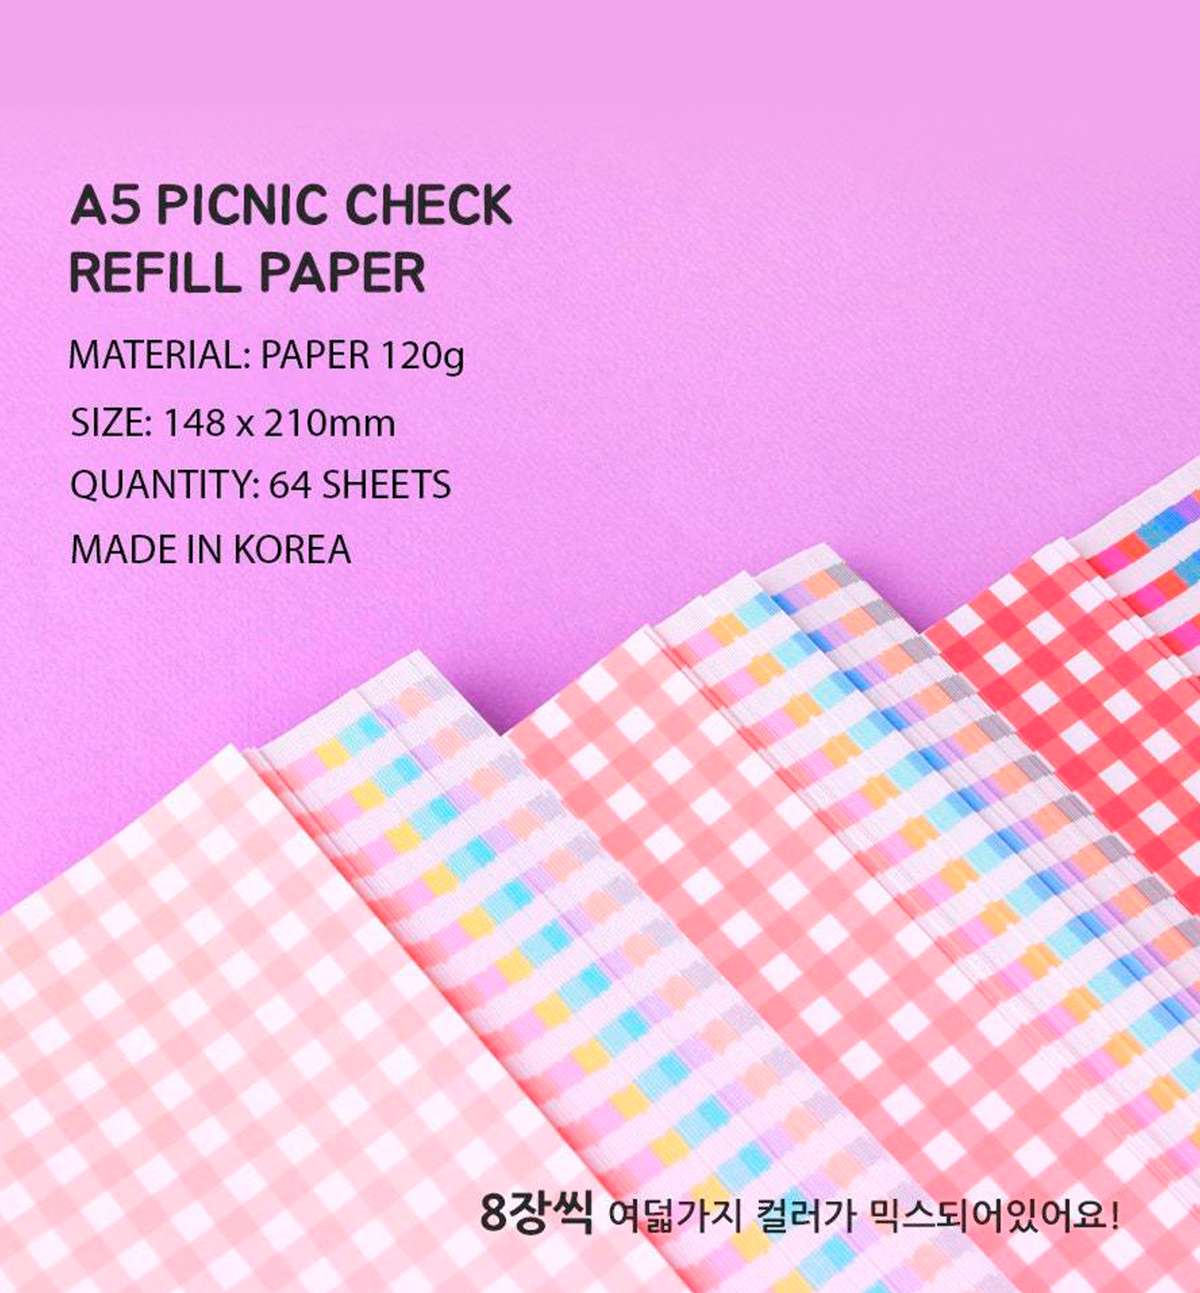 A5 Picnic Check Refill Paper